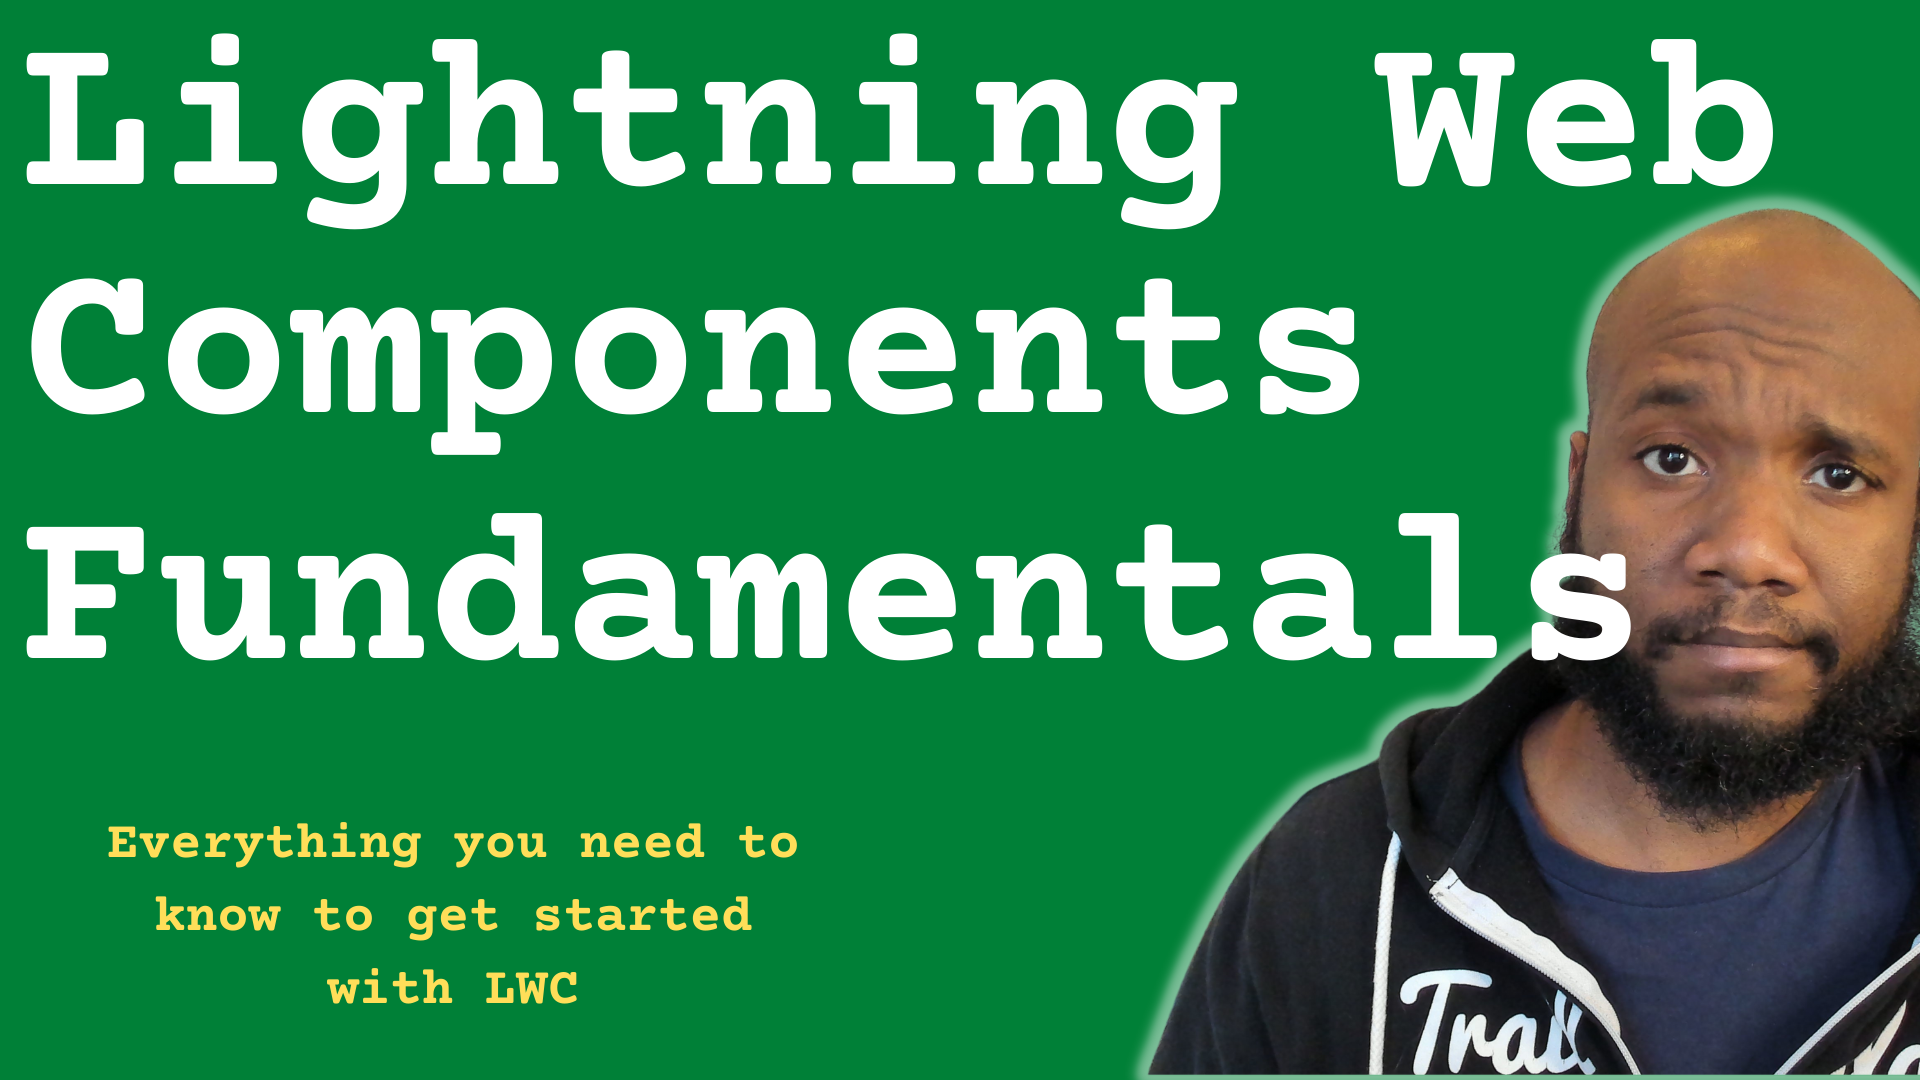 LWC Fundamentals